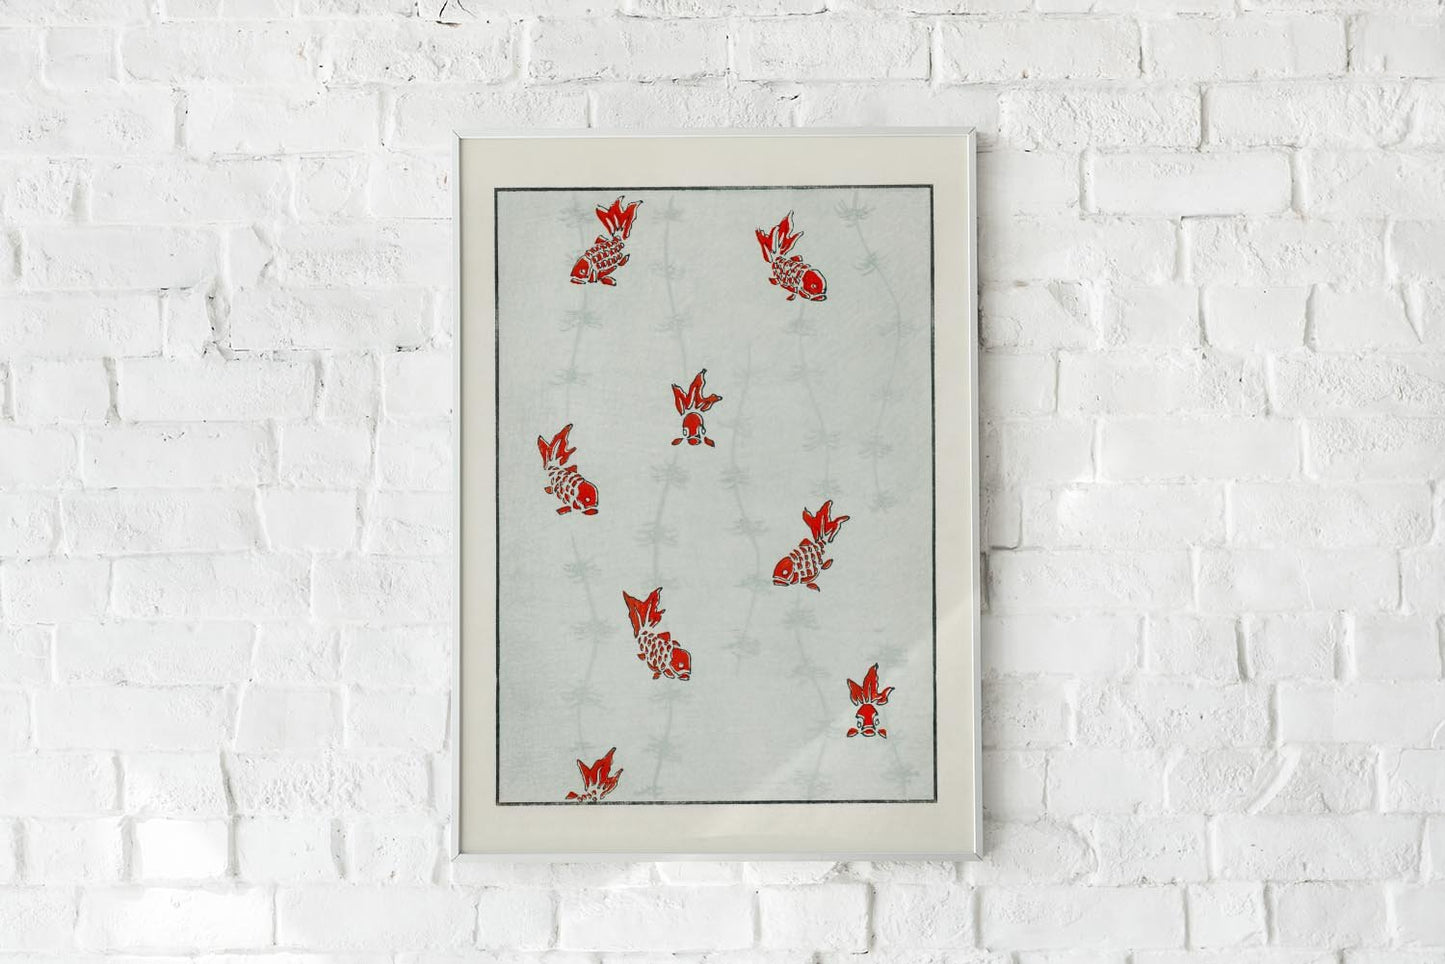 Japanese Koi Fish Pattern Poster